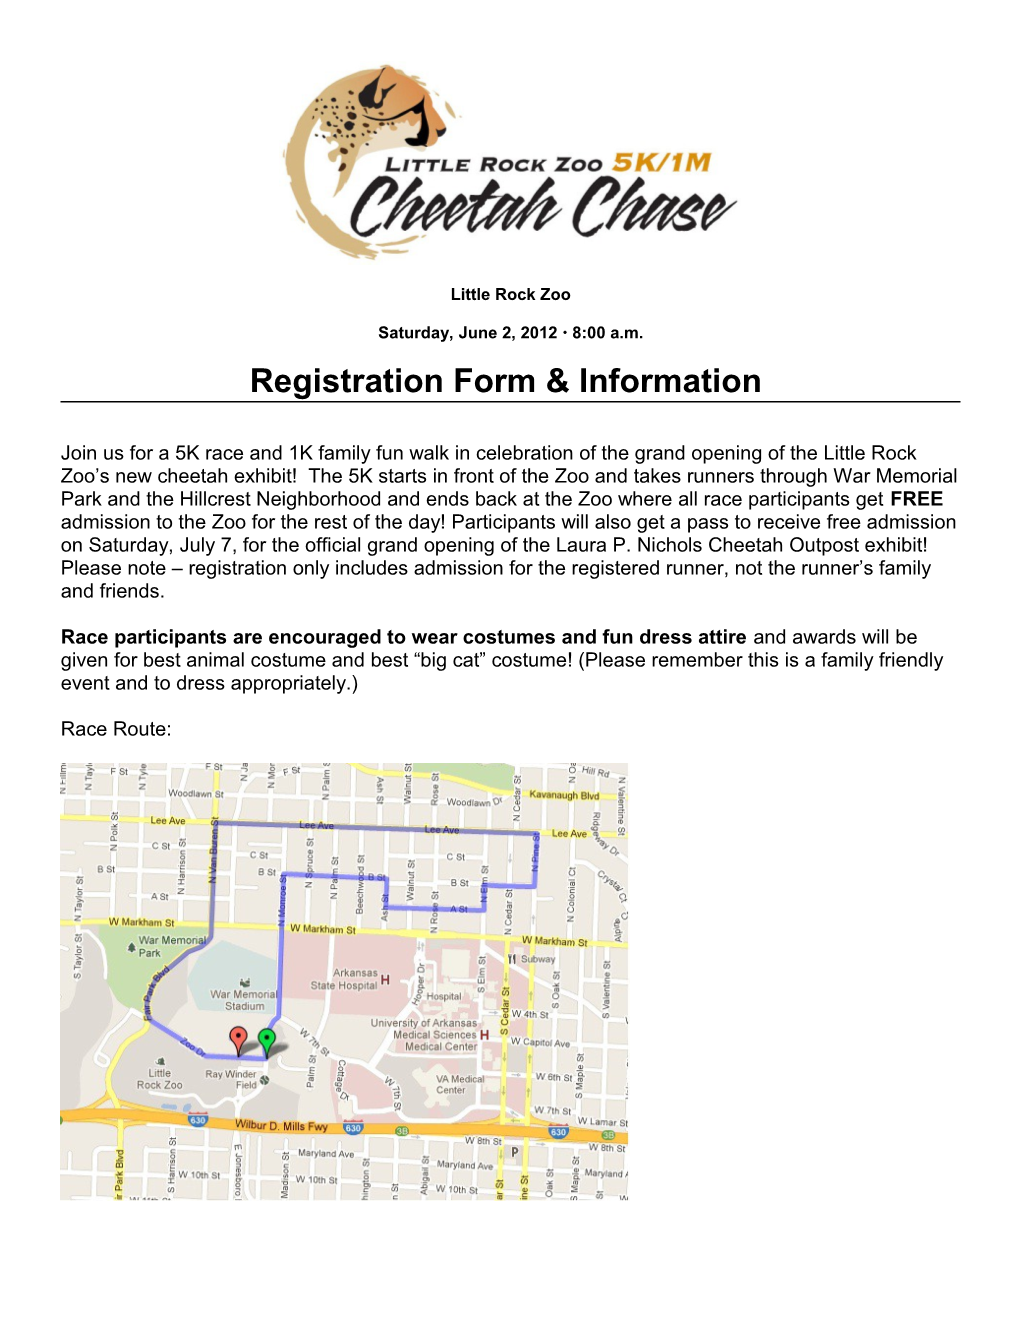 Registration Form & Information